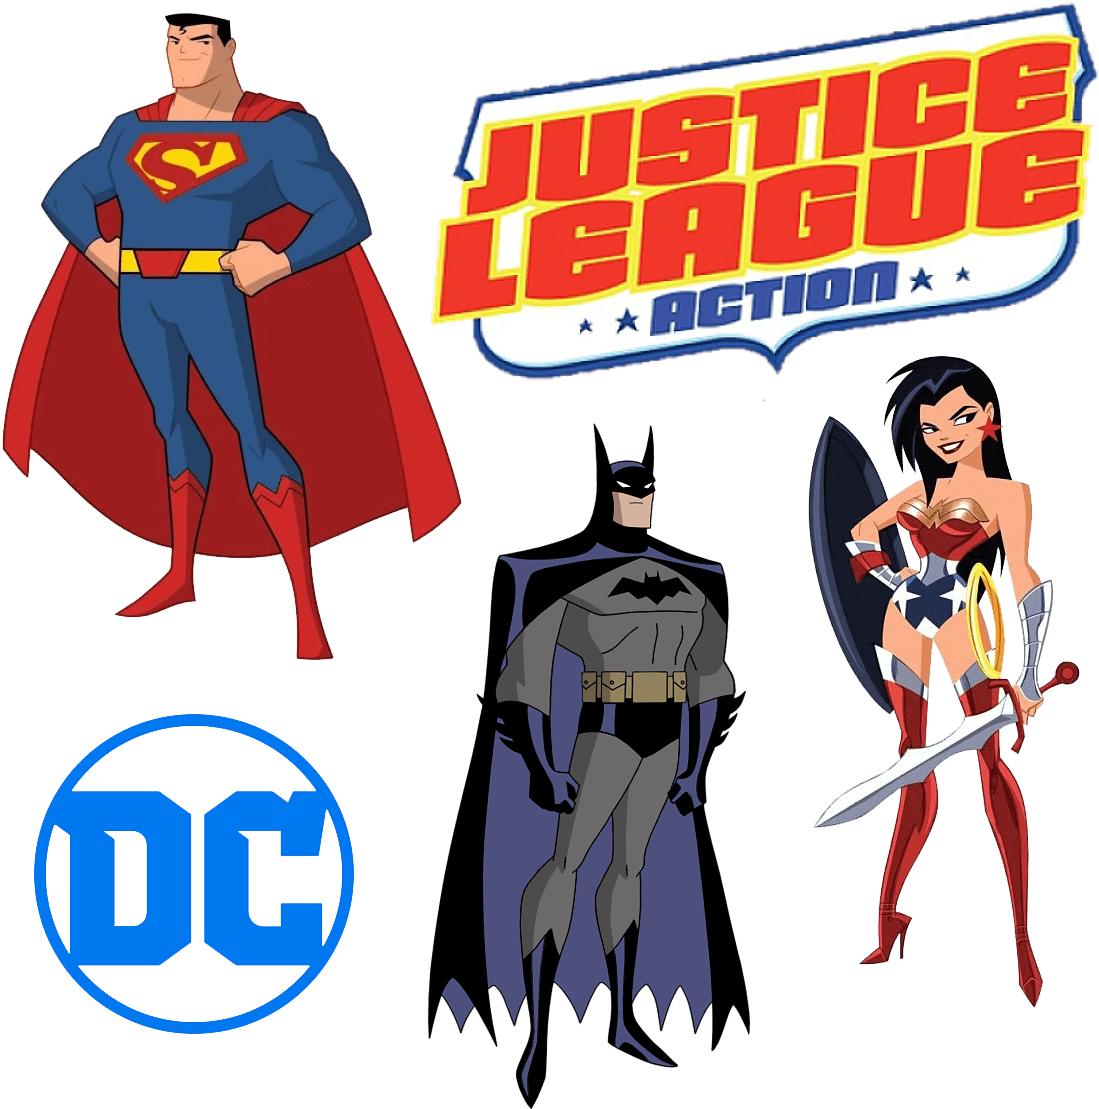 Justice League Action - Justice League Action Concept (1200x1200)